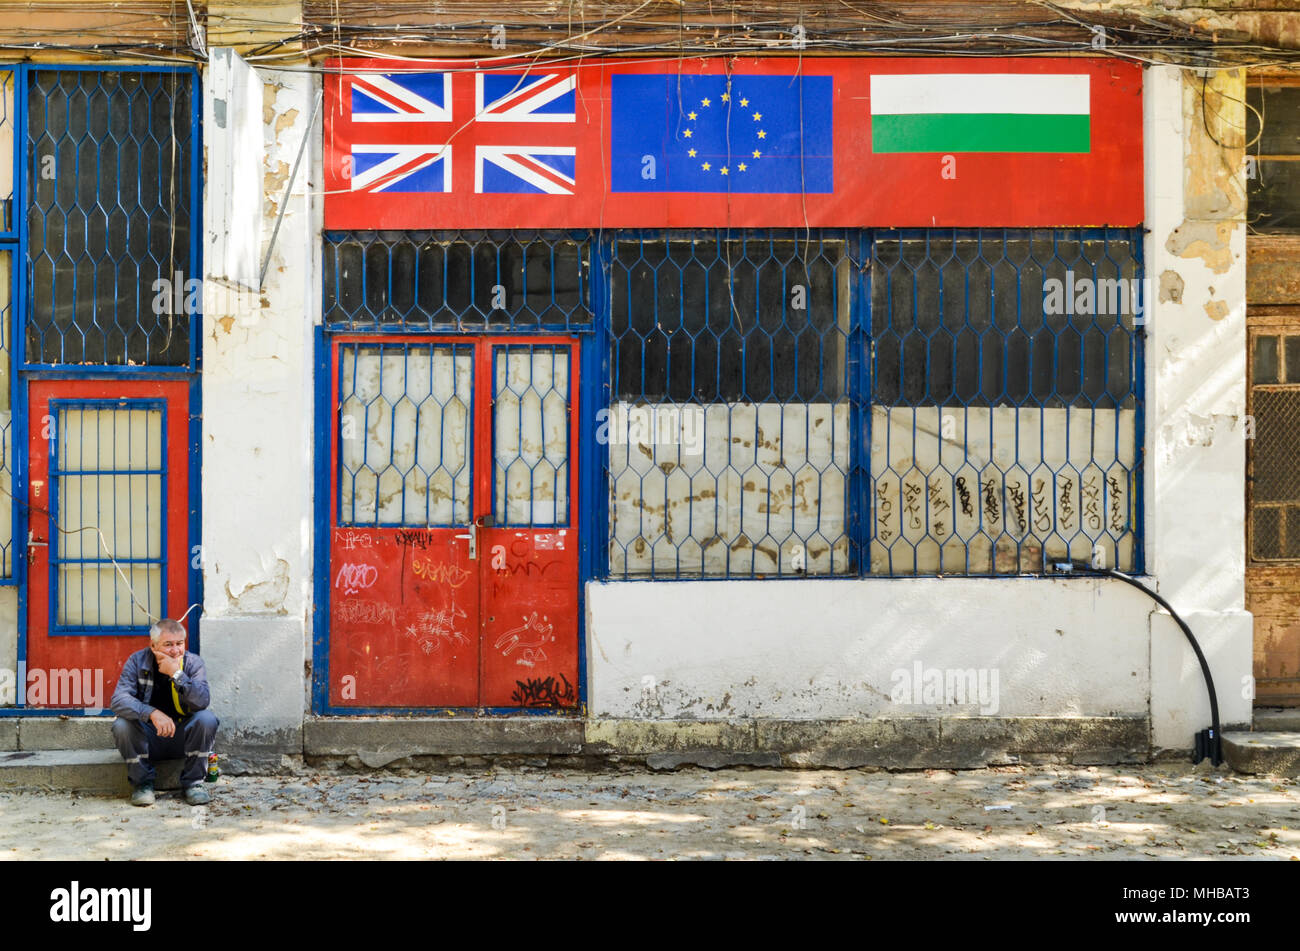 Alte Menschen sitzen, die durch eine Straße, vor einem Geschäft mit der Bulgarischen, UK und EU-Flaggen. Plovdiv, Bulgarien Stockfoto